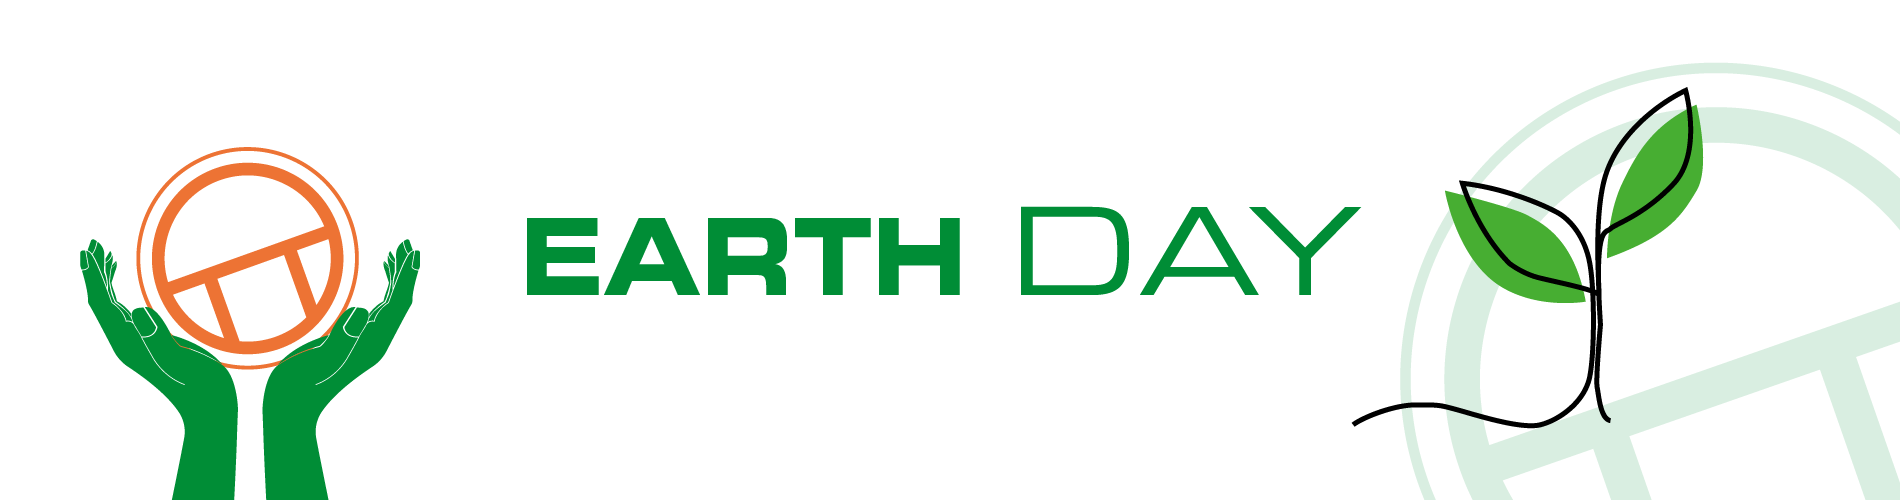 earthday celebration - banner